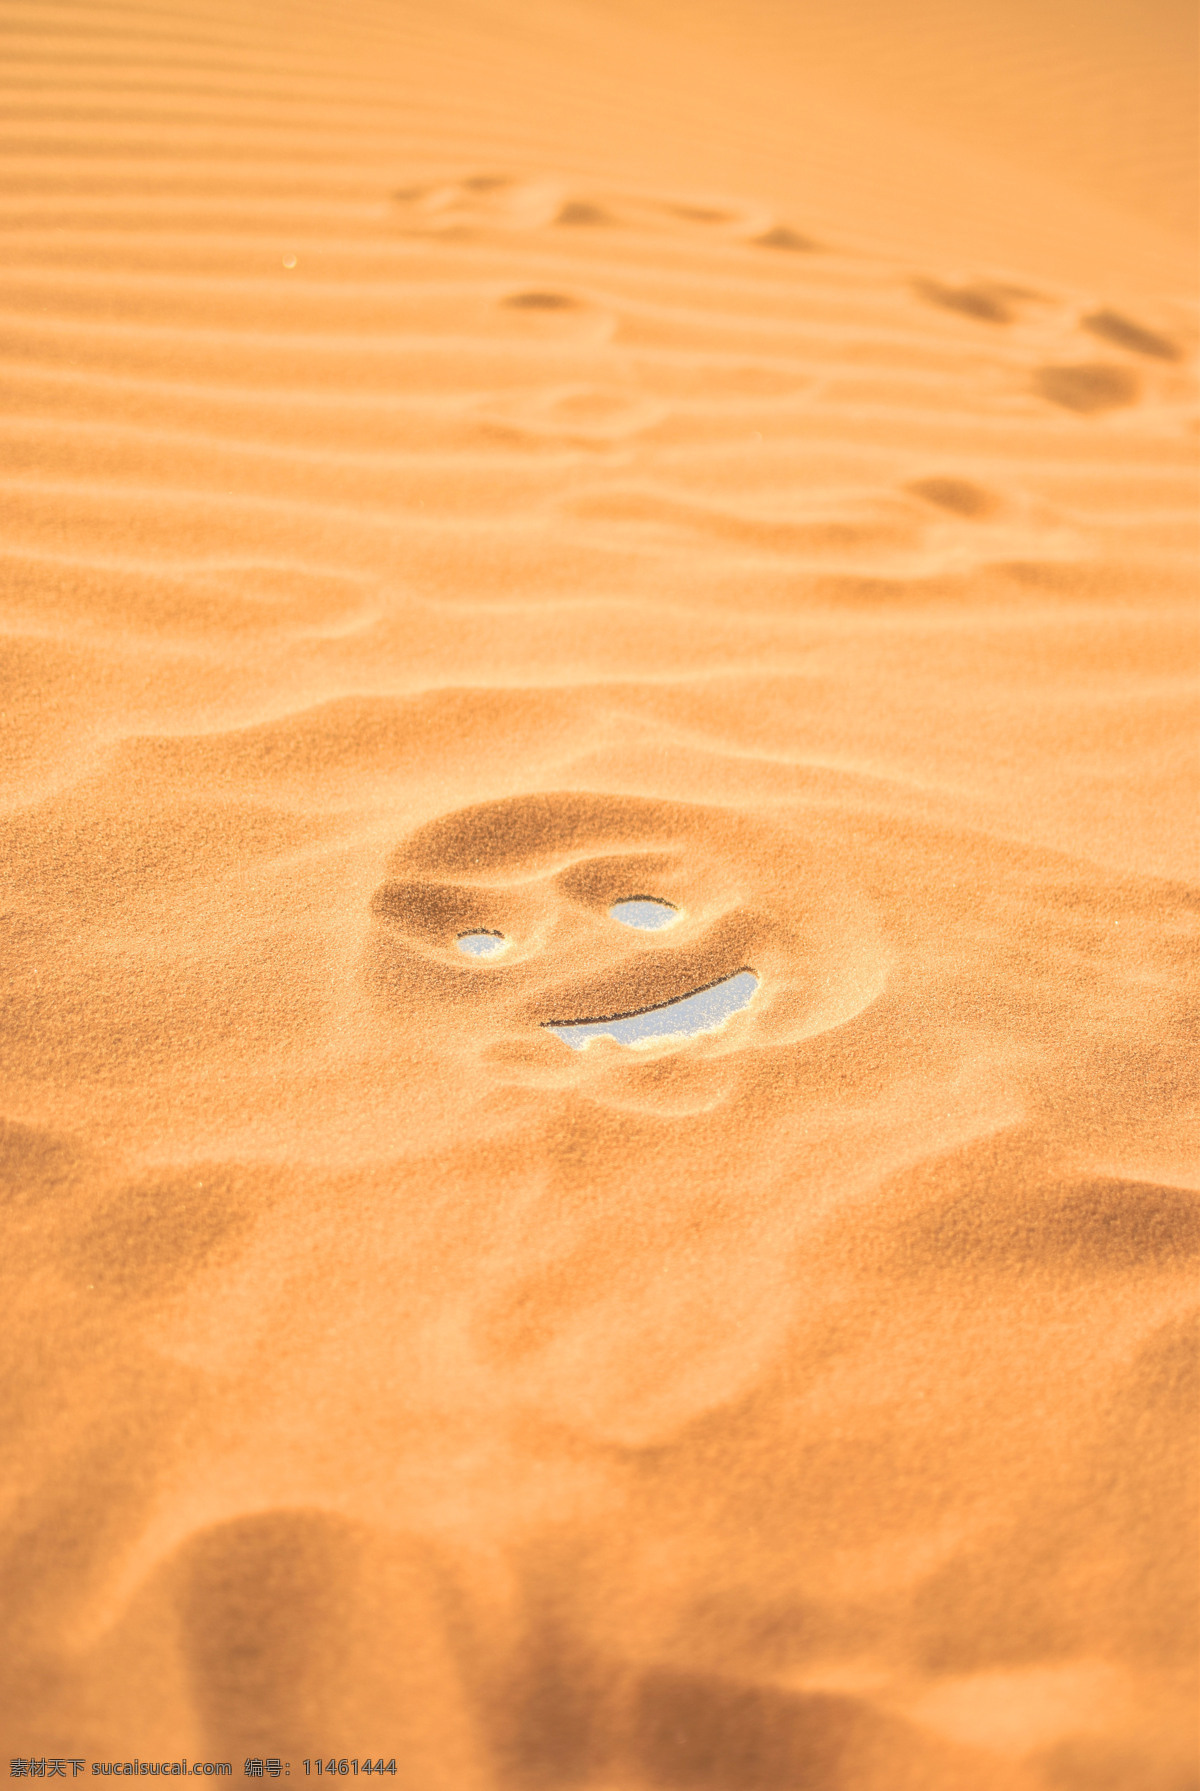 沙漠笑脸 沙漠 笑脸 搞笑 背景 黄色 沙子 自然景观 自然风景